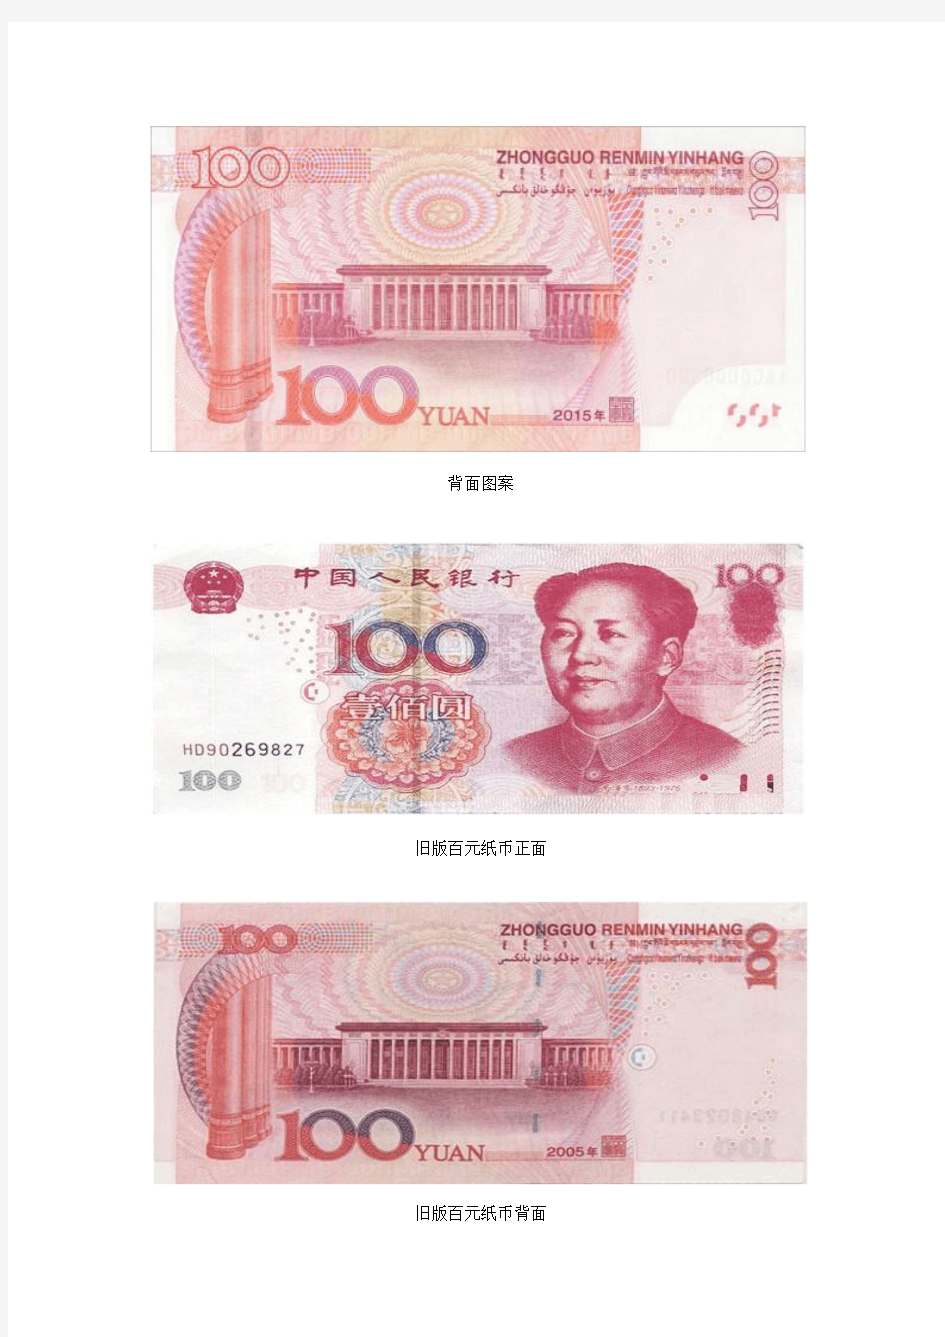 央行将发行2015年版100元纸币 更易识别真伪